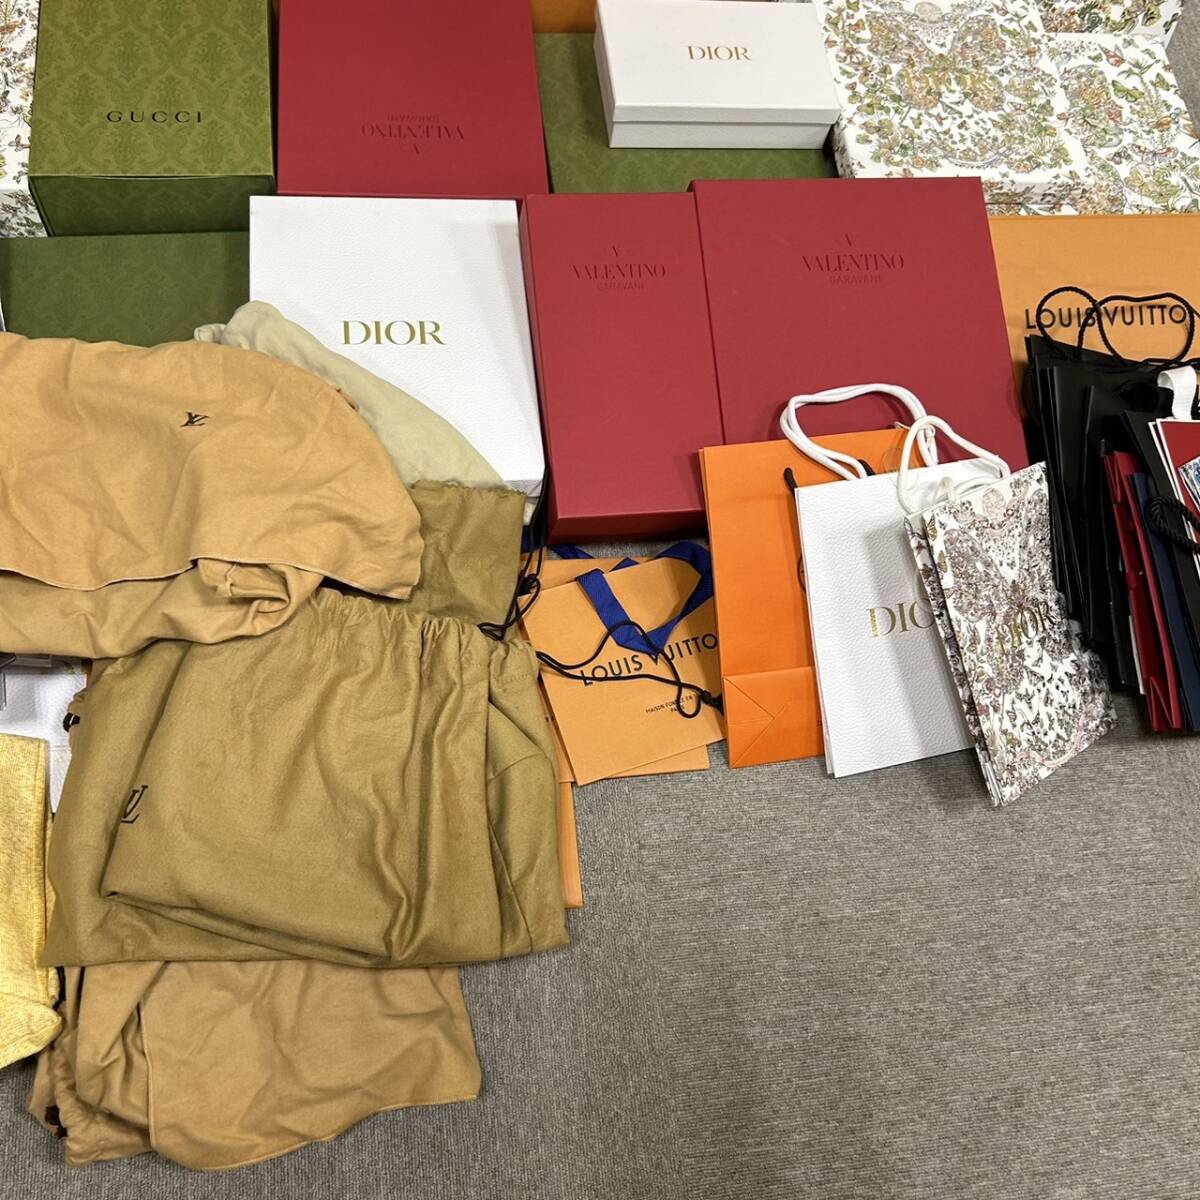 [ART-4878]1 иен старт Herms Vuitton GUCCI Dior и т.п. пустой коробка сумка для хранения бумажный пакет много . суммировать размер sama . коллекция товары долгосрочного хранения текущее состояние товар 